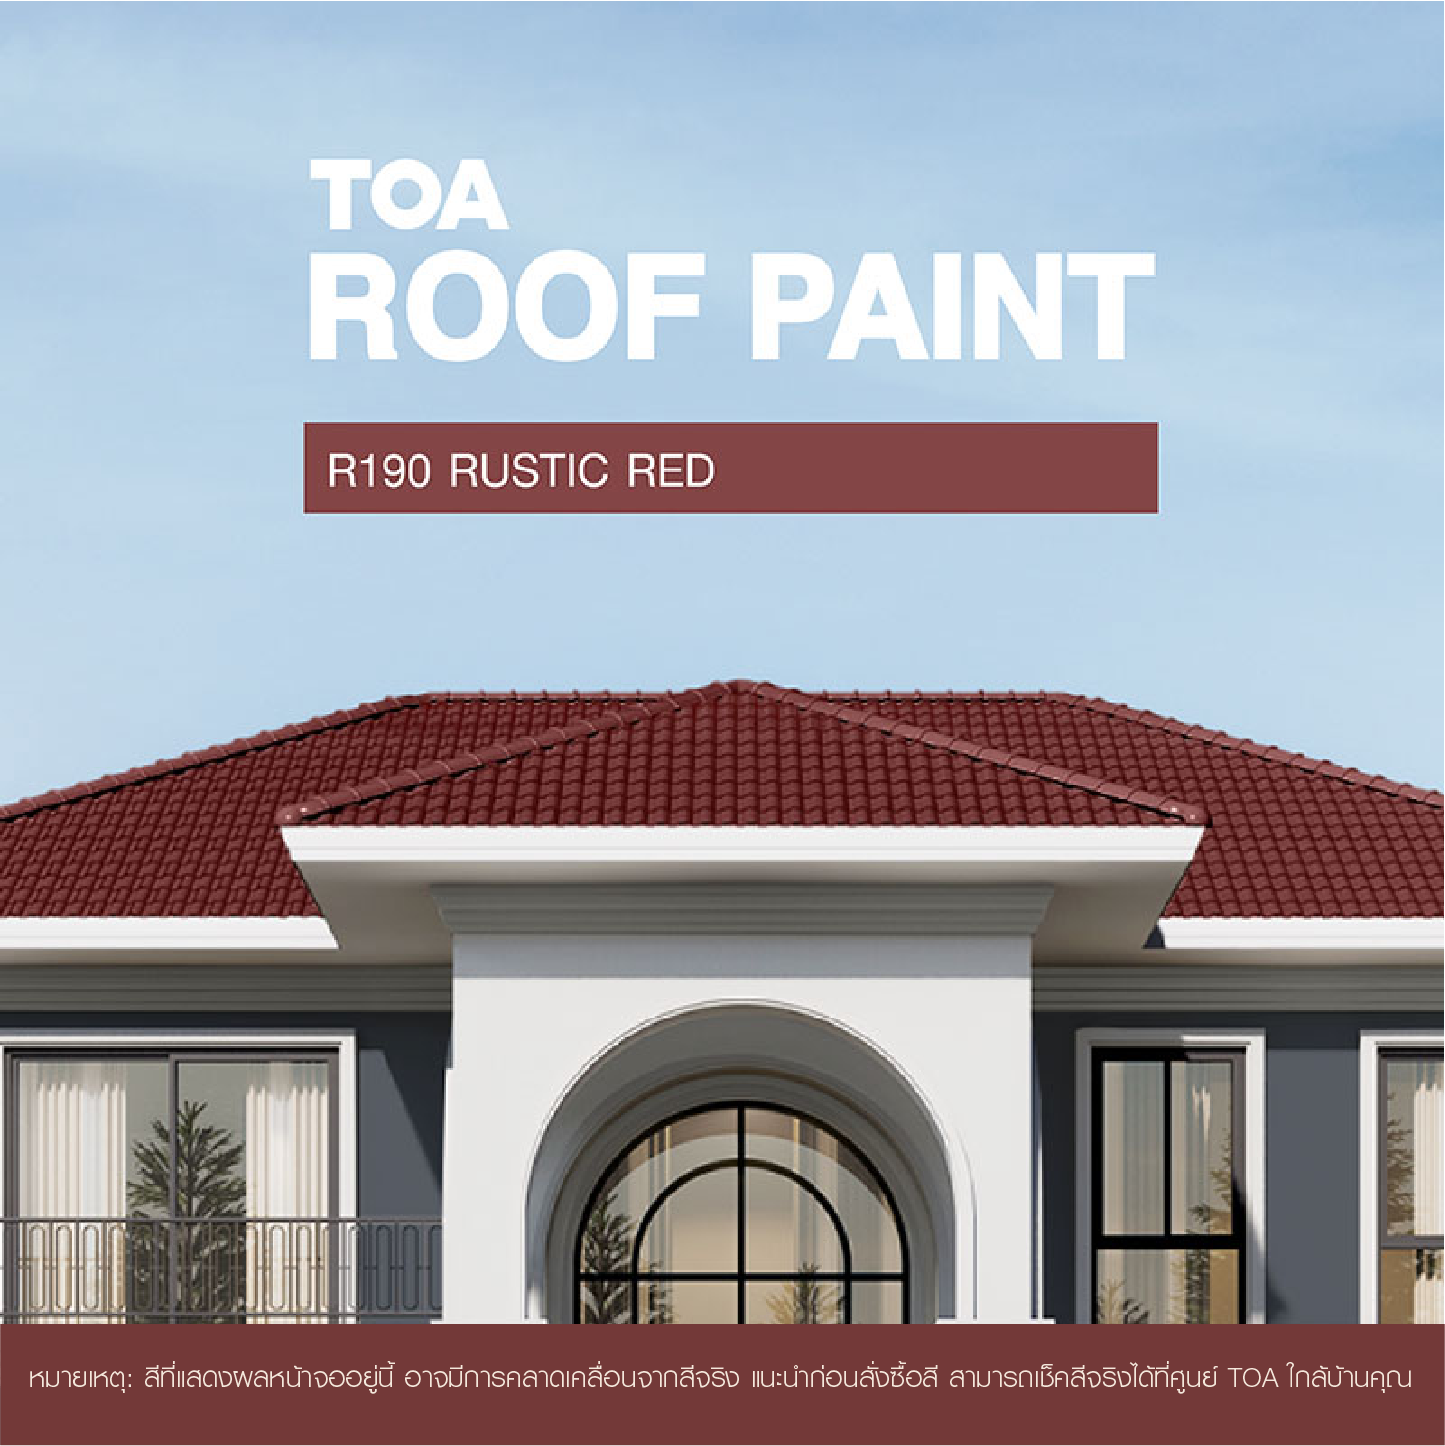 ถ้าคุณ กำลัง มองหา หลังคาบ้าน สีไหนสวย ขอแนะนำ บ้าน หลังคา สี แดง เอราวัณ ของสีทาหลังคา ทีโอเอ รูฟ เพ้นท์ R190 (Rustic Red)